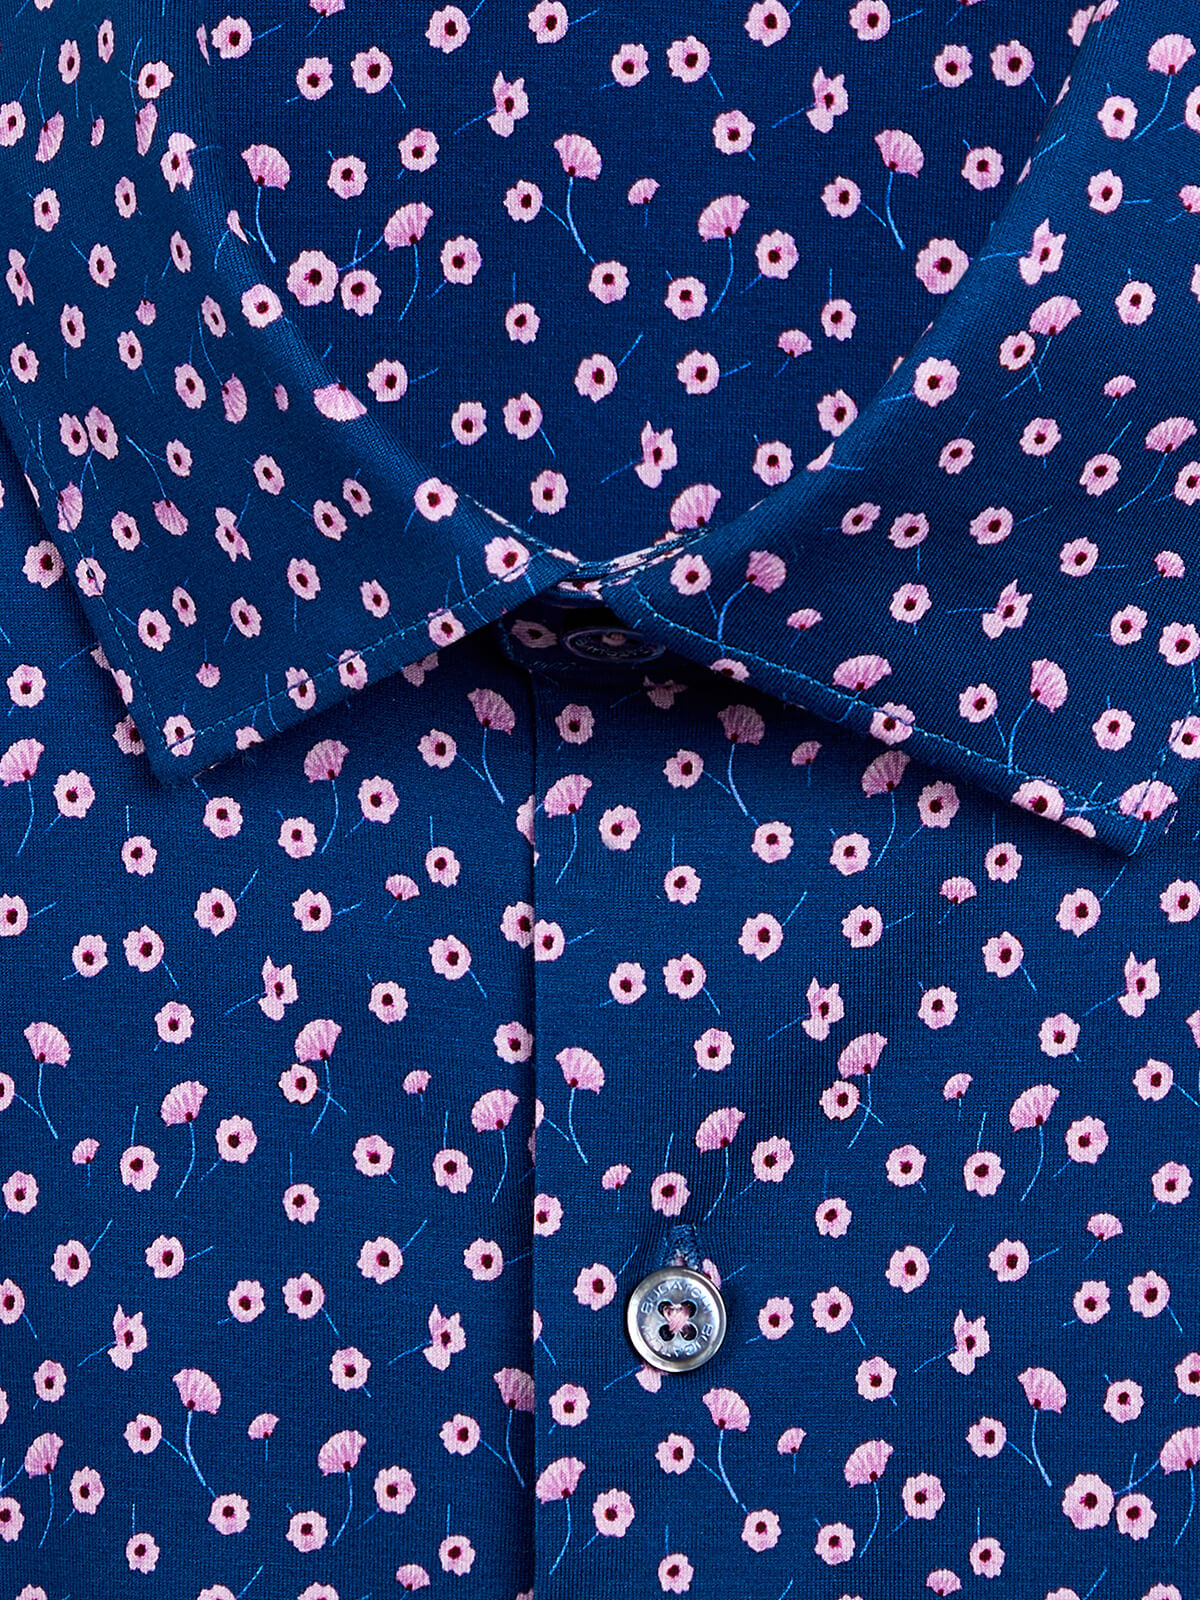 OoohCotton Tech Long Sleeve Shirt - Navy Floral